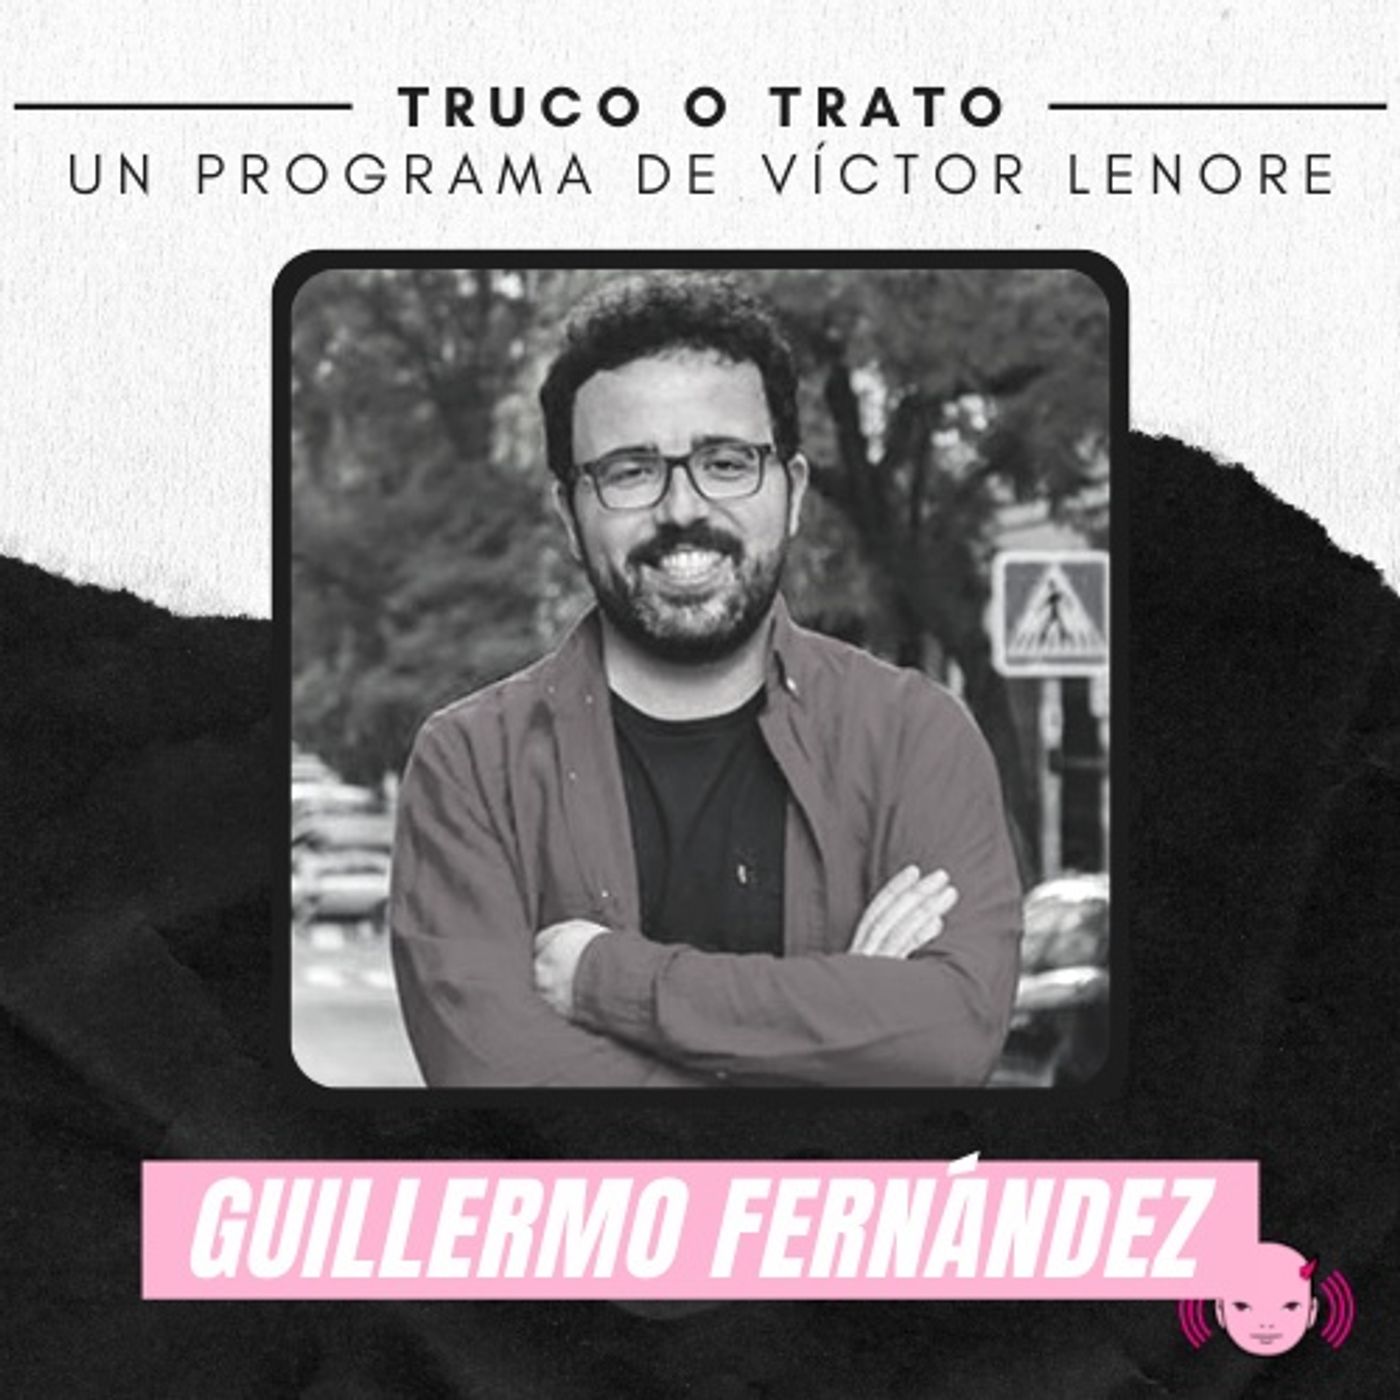 Truco o trato con Víctor Lenore #3: Guillermo Fernández